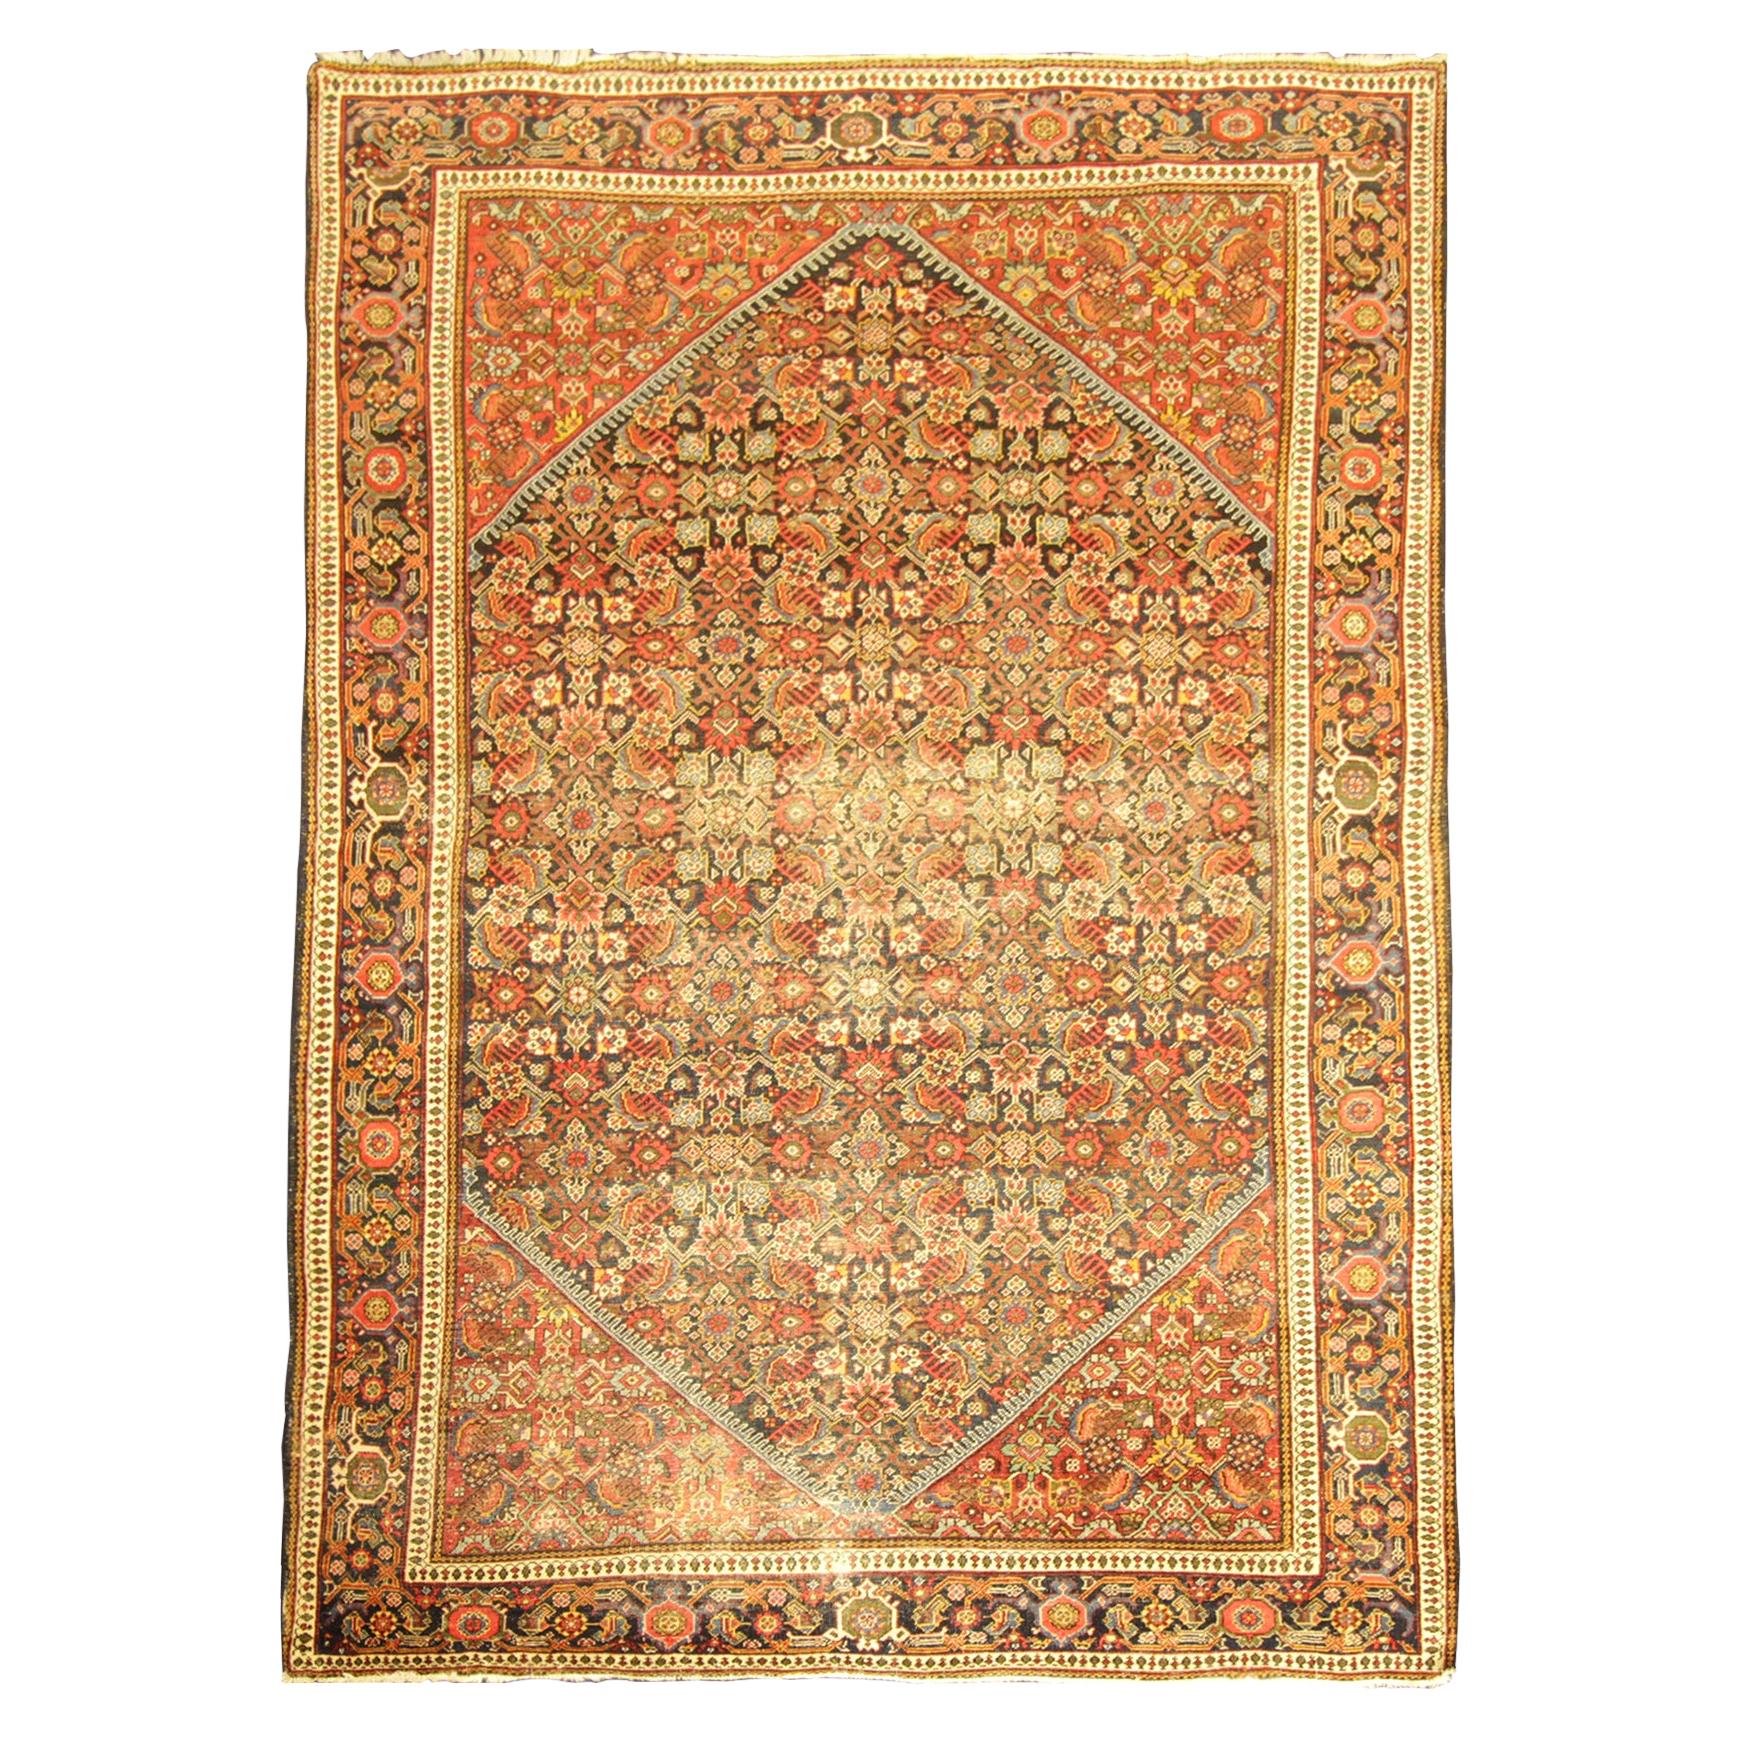 Handgefertigter orientalischer antiker Teppich, orangefarbener Wollteppich